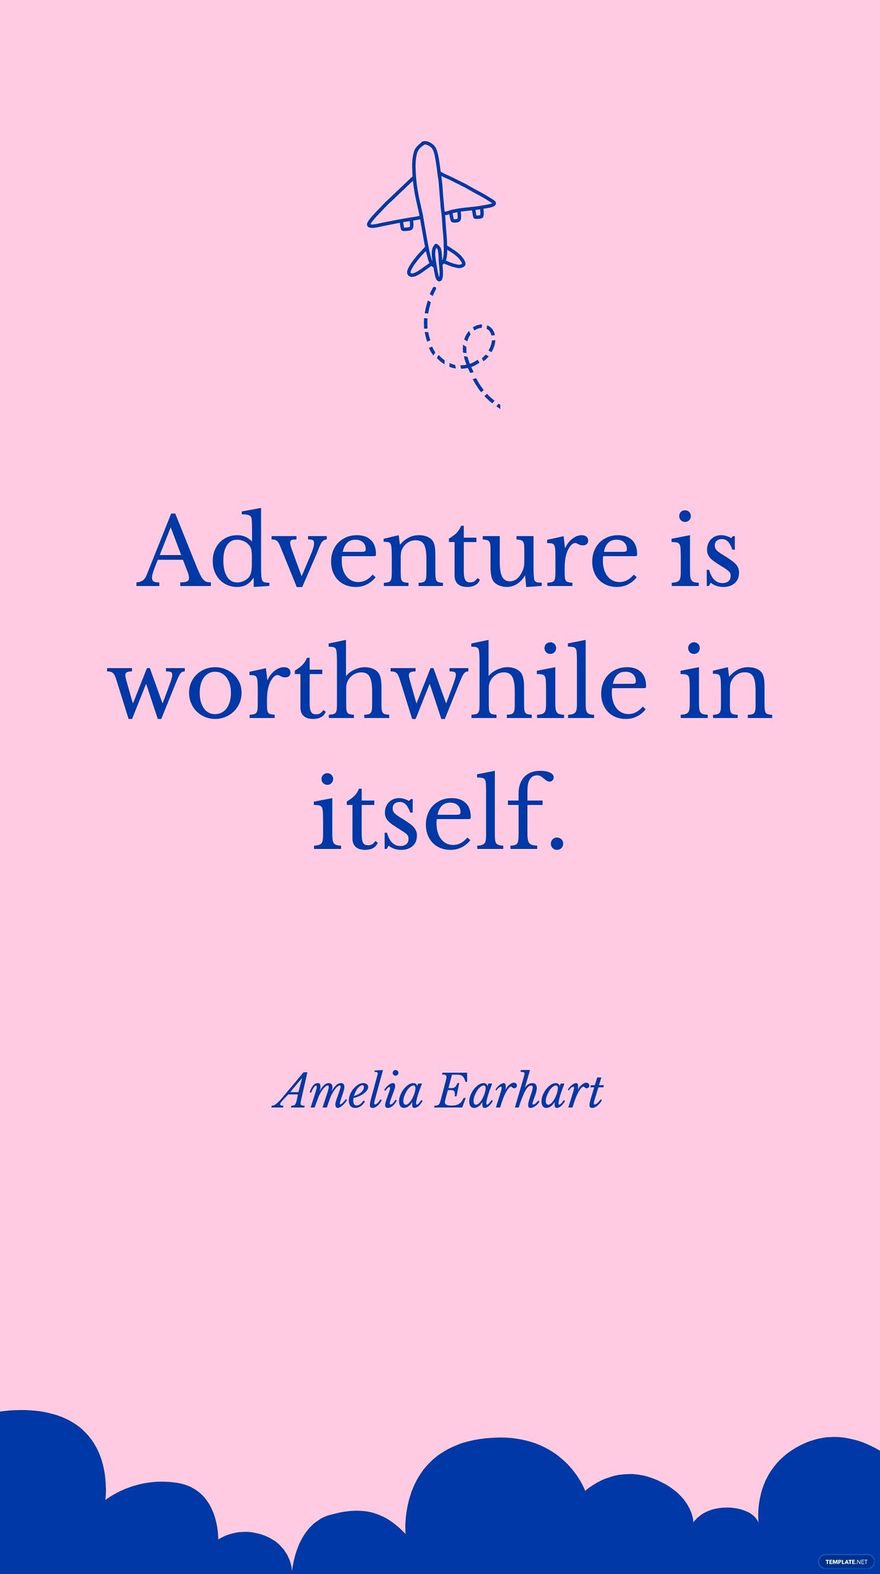 Amelia Earhart - Adventure is worthwhile in itself.